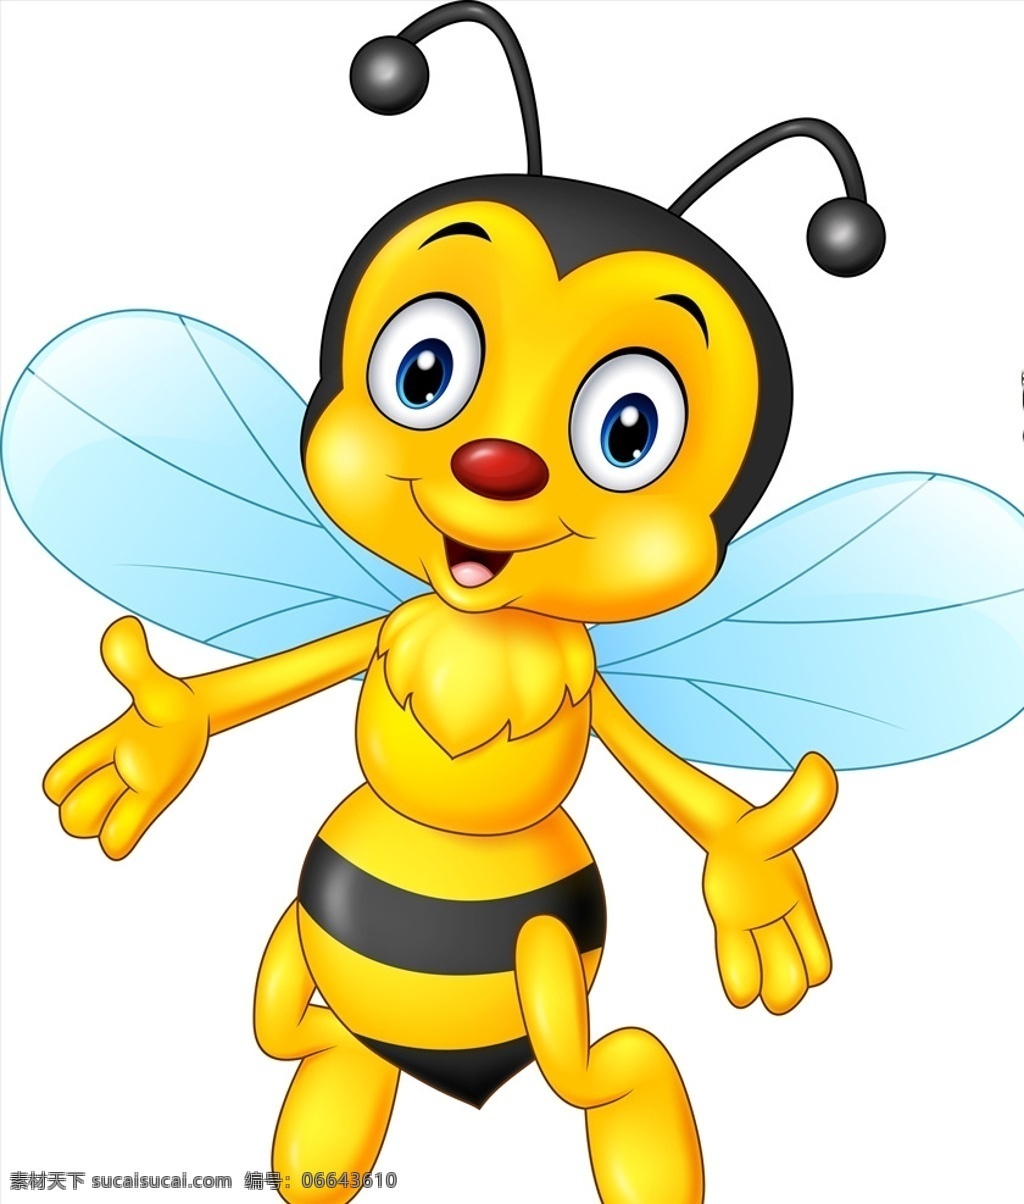 可爱卡通蜜蜂 时钟 卡通表情 卡通世界 小卡通 笑脸 卡通蜜蜂 可爱蜜蜂 蜜蜂 卡通动物 卡通设计